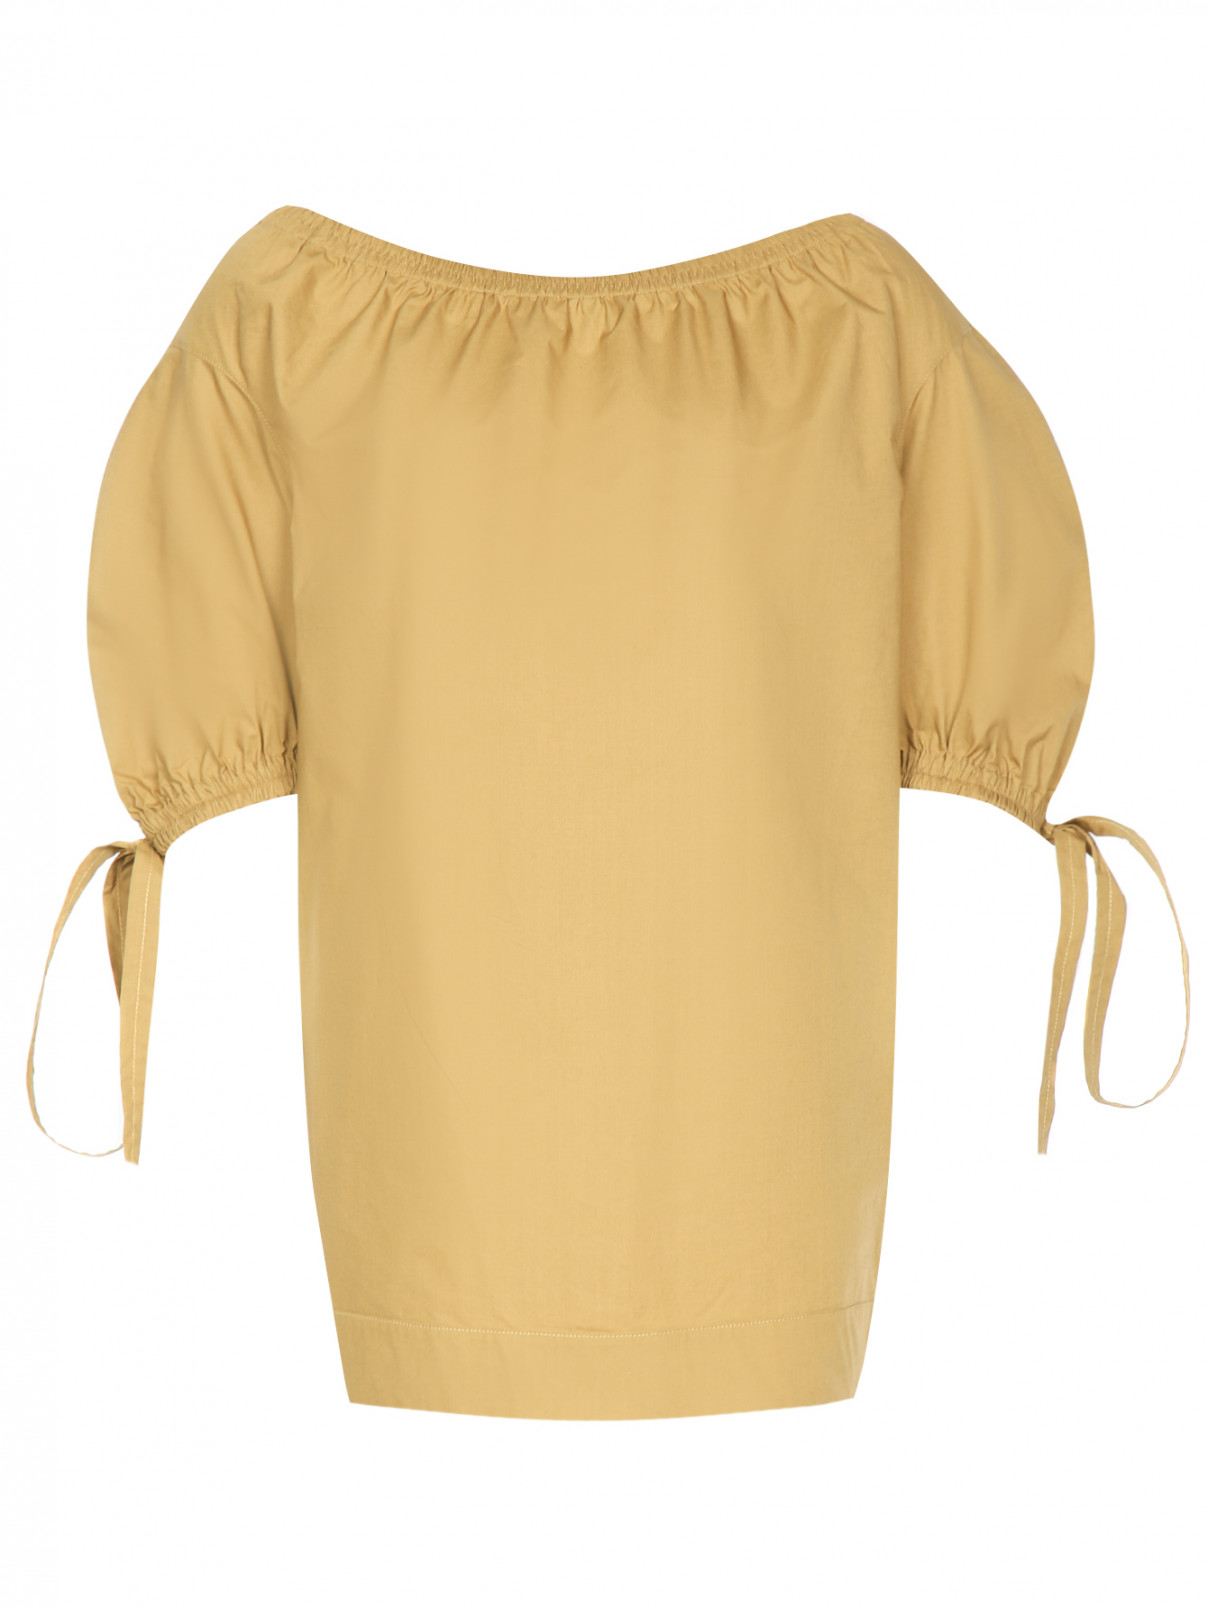 Удлиненная блуза из хлопка с короткими рукавами Sonia Rykiel  –  Общий вид  – Цвет:  Зеленый